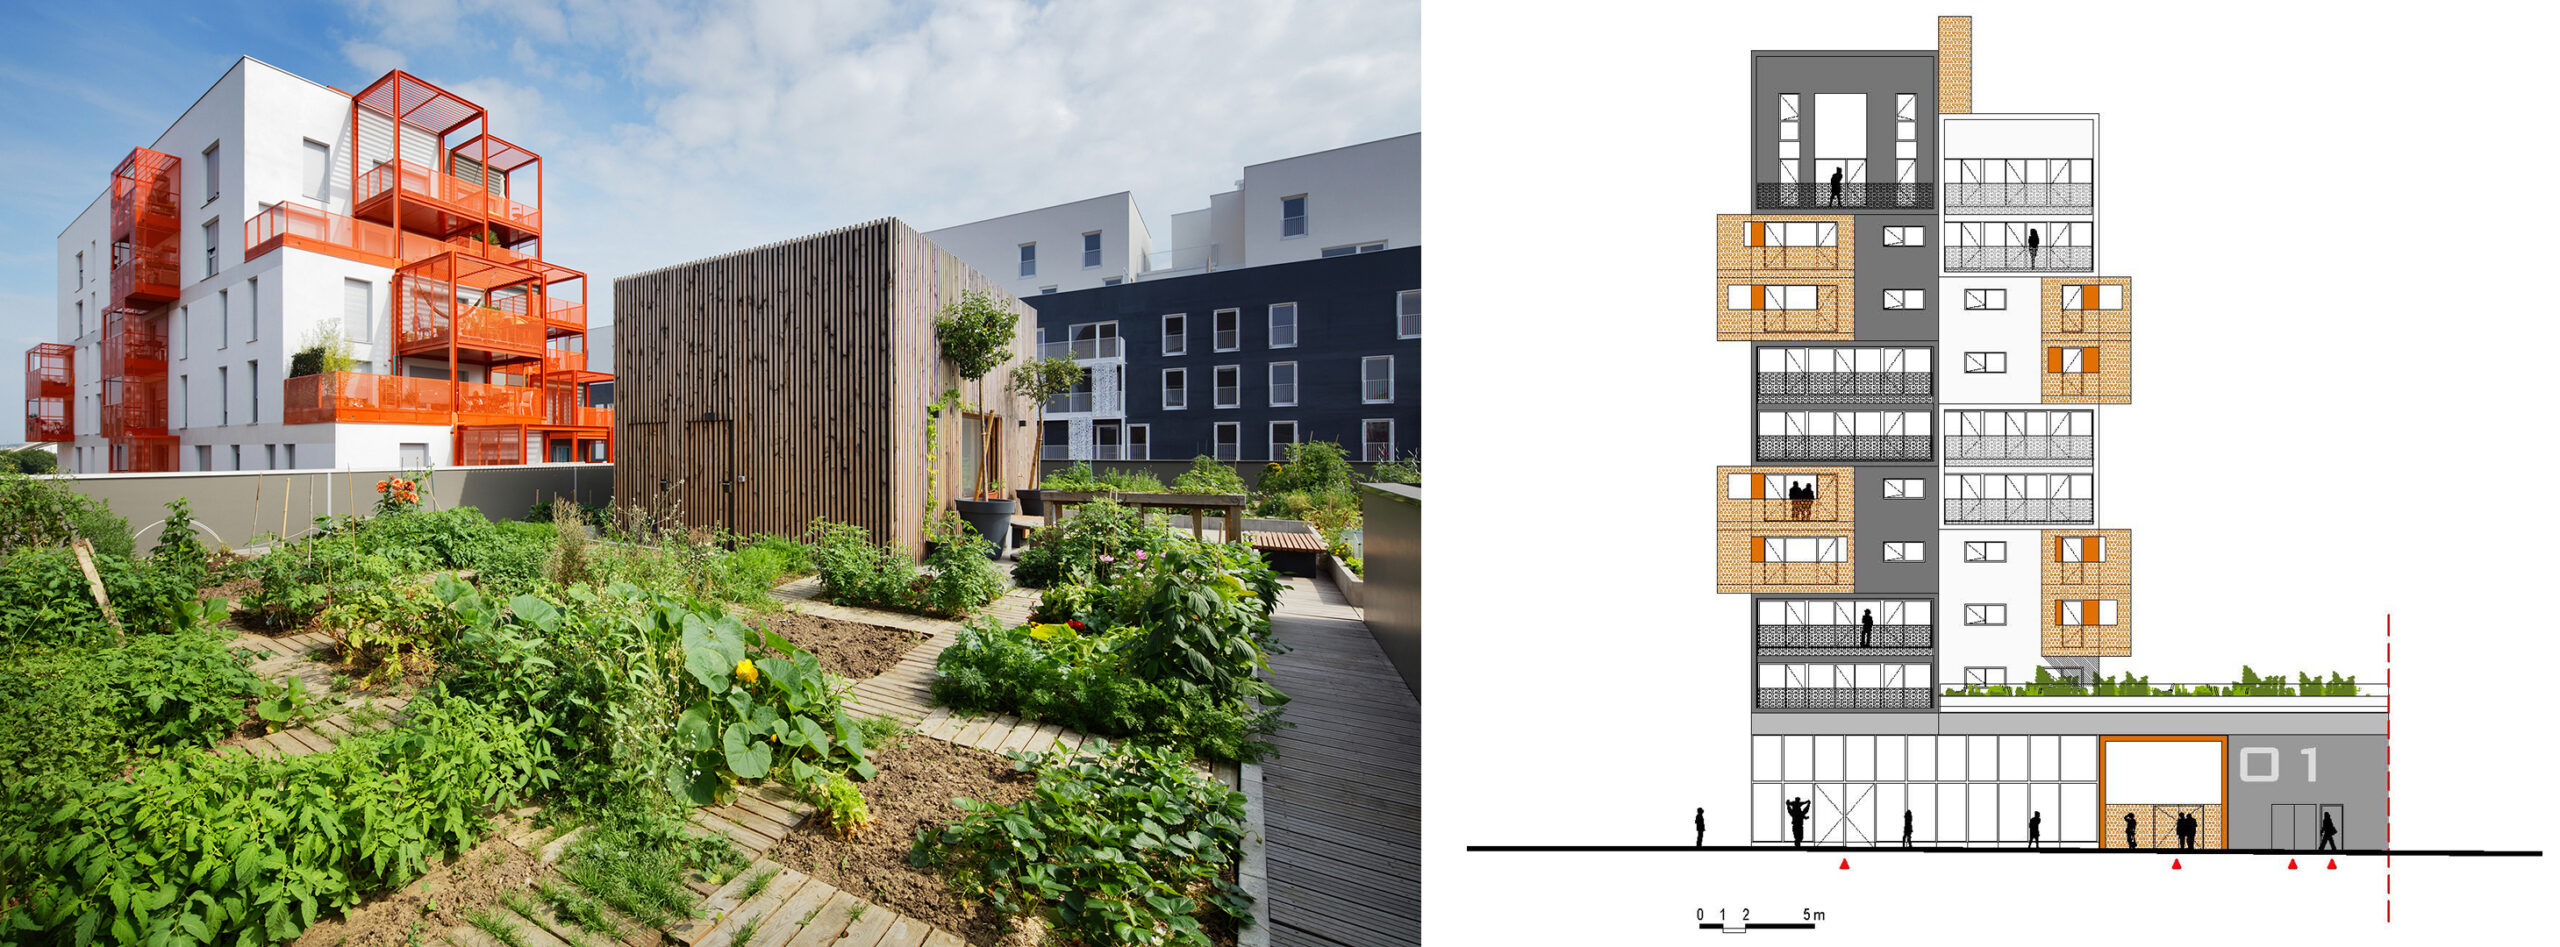 90-unit housing development in Saint-Ouen, France by Atelier du Pont